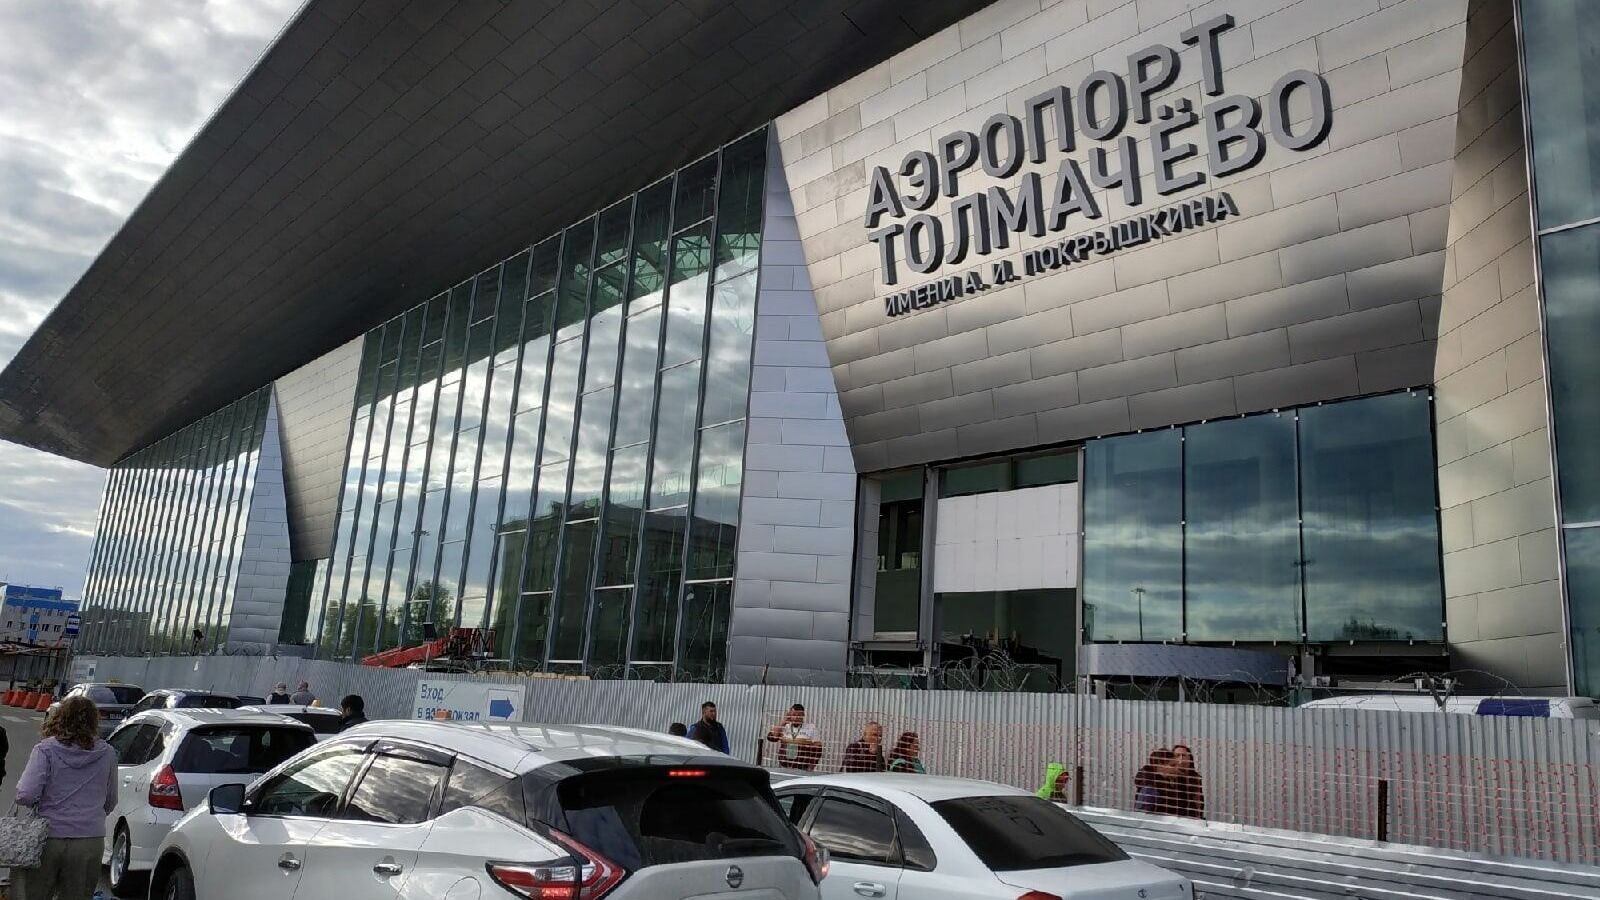 Эаропорт "Толмачево" откроет новый терминал в феврале.